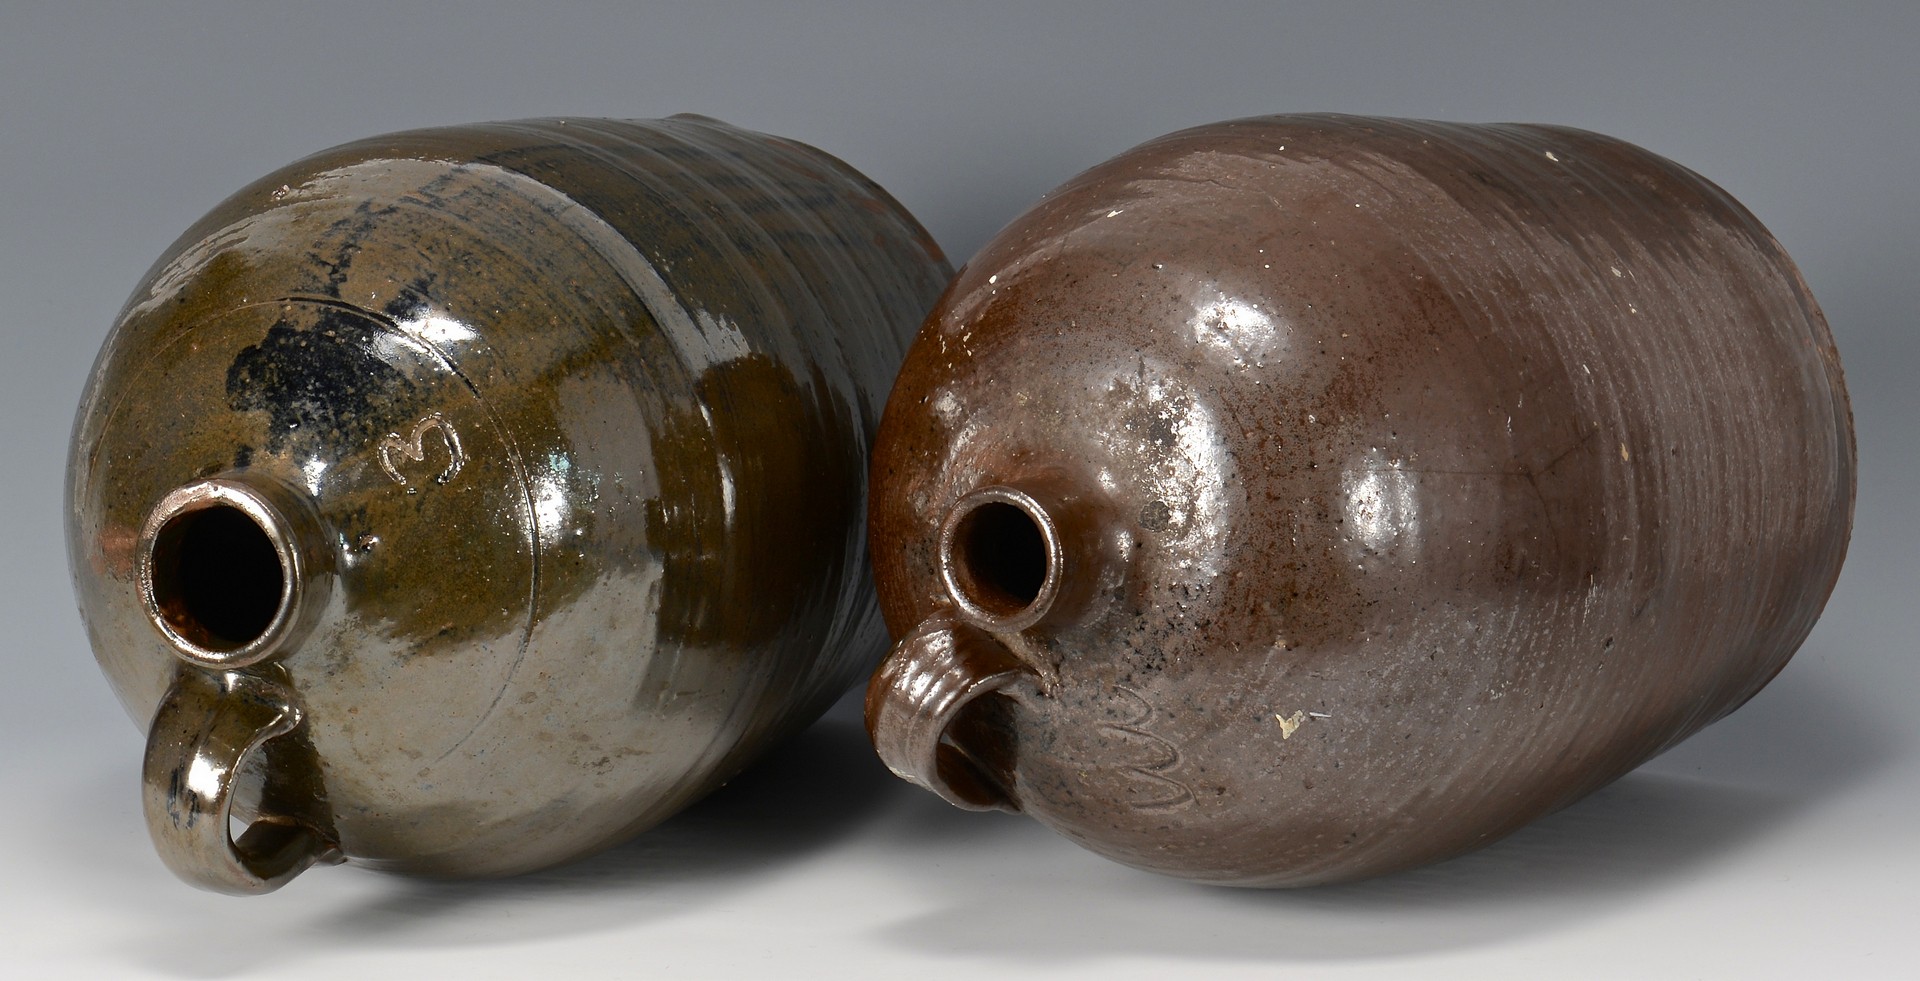 Lot 481: 3 Southern stoneware jugs, prob. GA